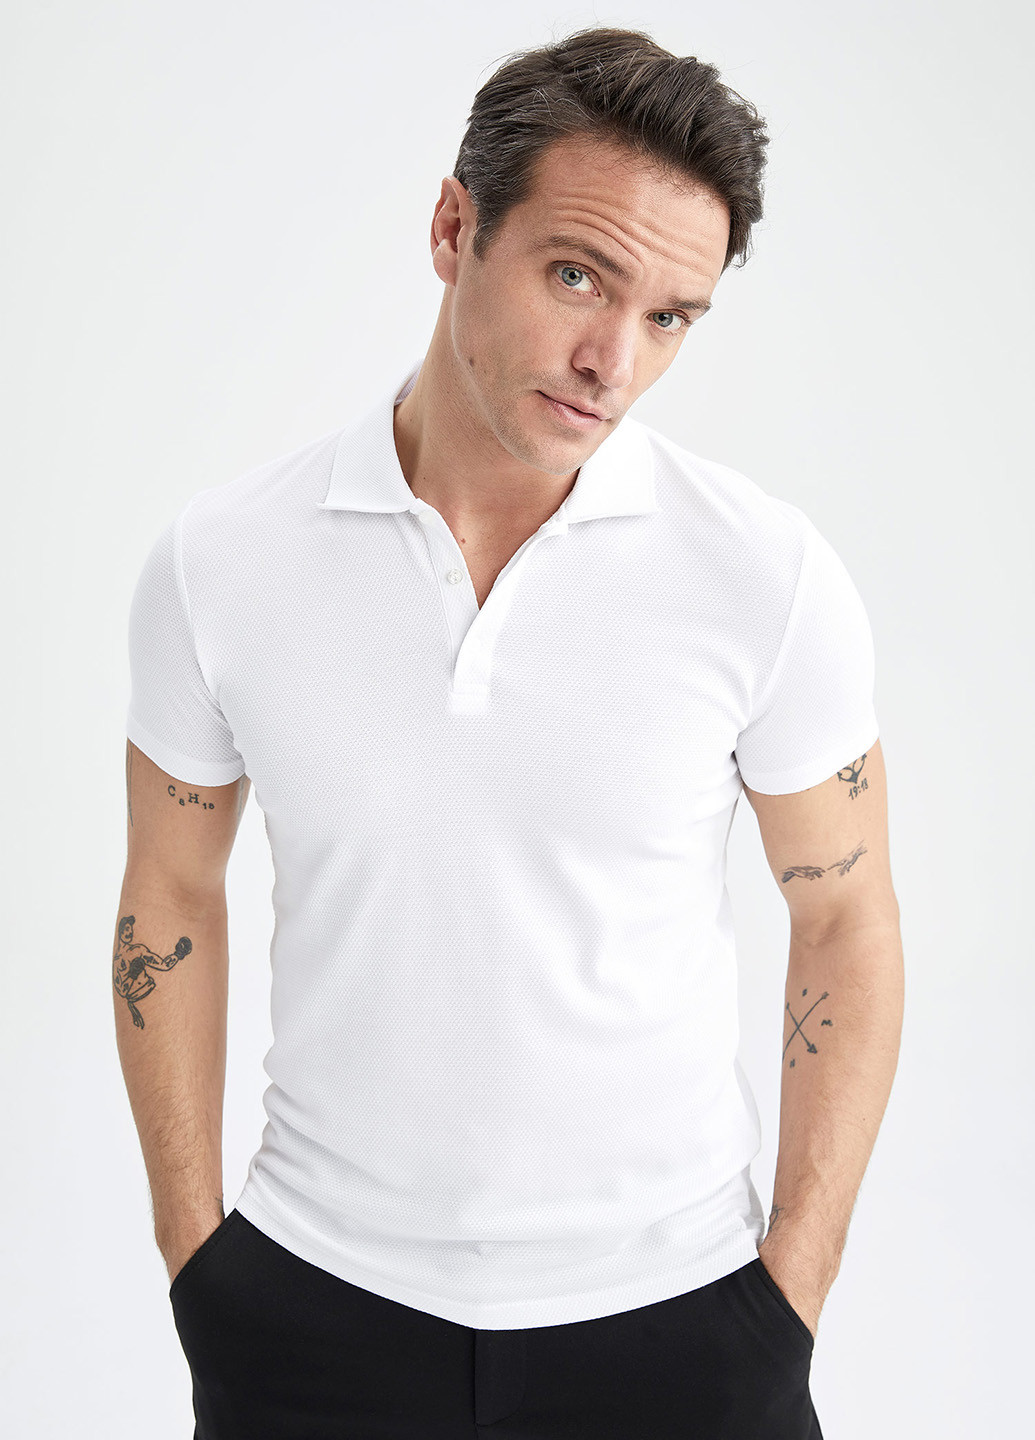 Белая футболка-поло для мужчин DeFacto